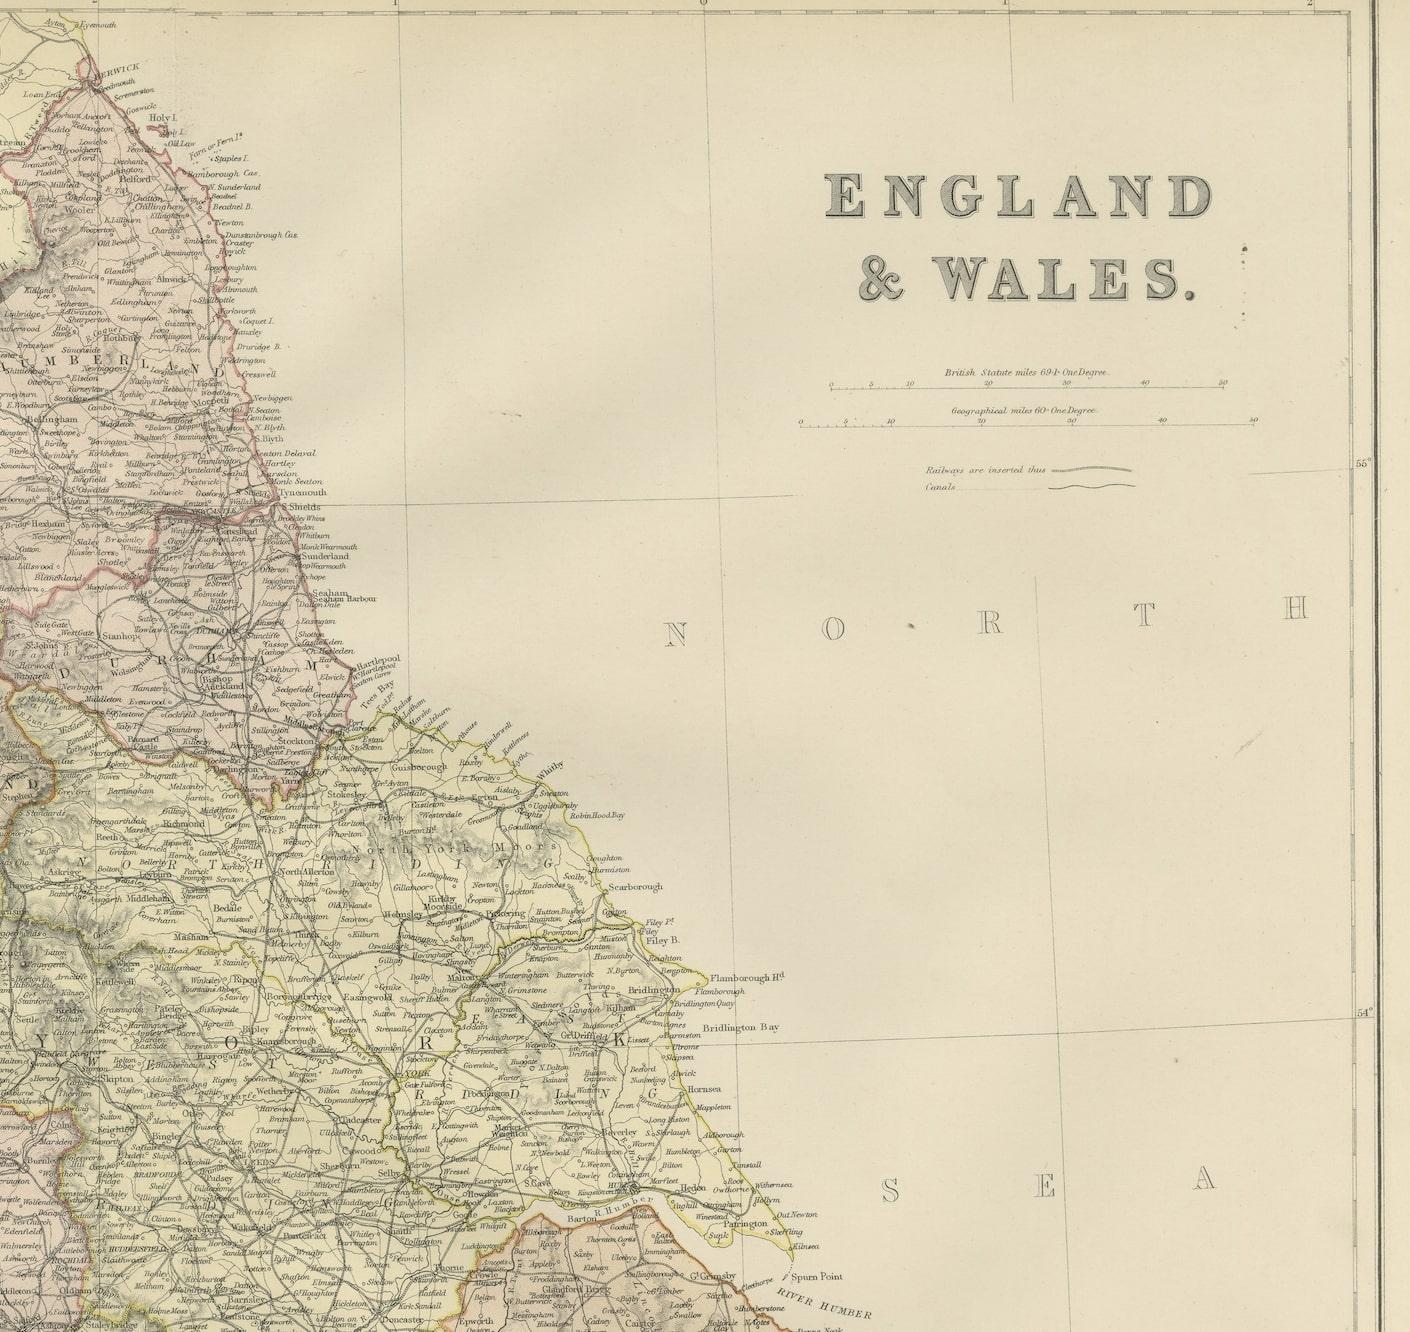 Explorez la splendeur historique de l'Angleterre et du Pays de Galles avec cette carte ancienne ! Faisant partie d'une collection distinguée, cette carte présente une vue captivante des paysages enchanteurs, des villes et de la richesse historique